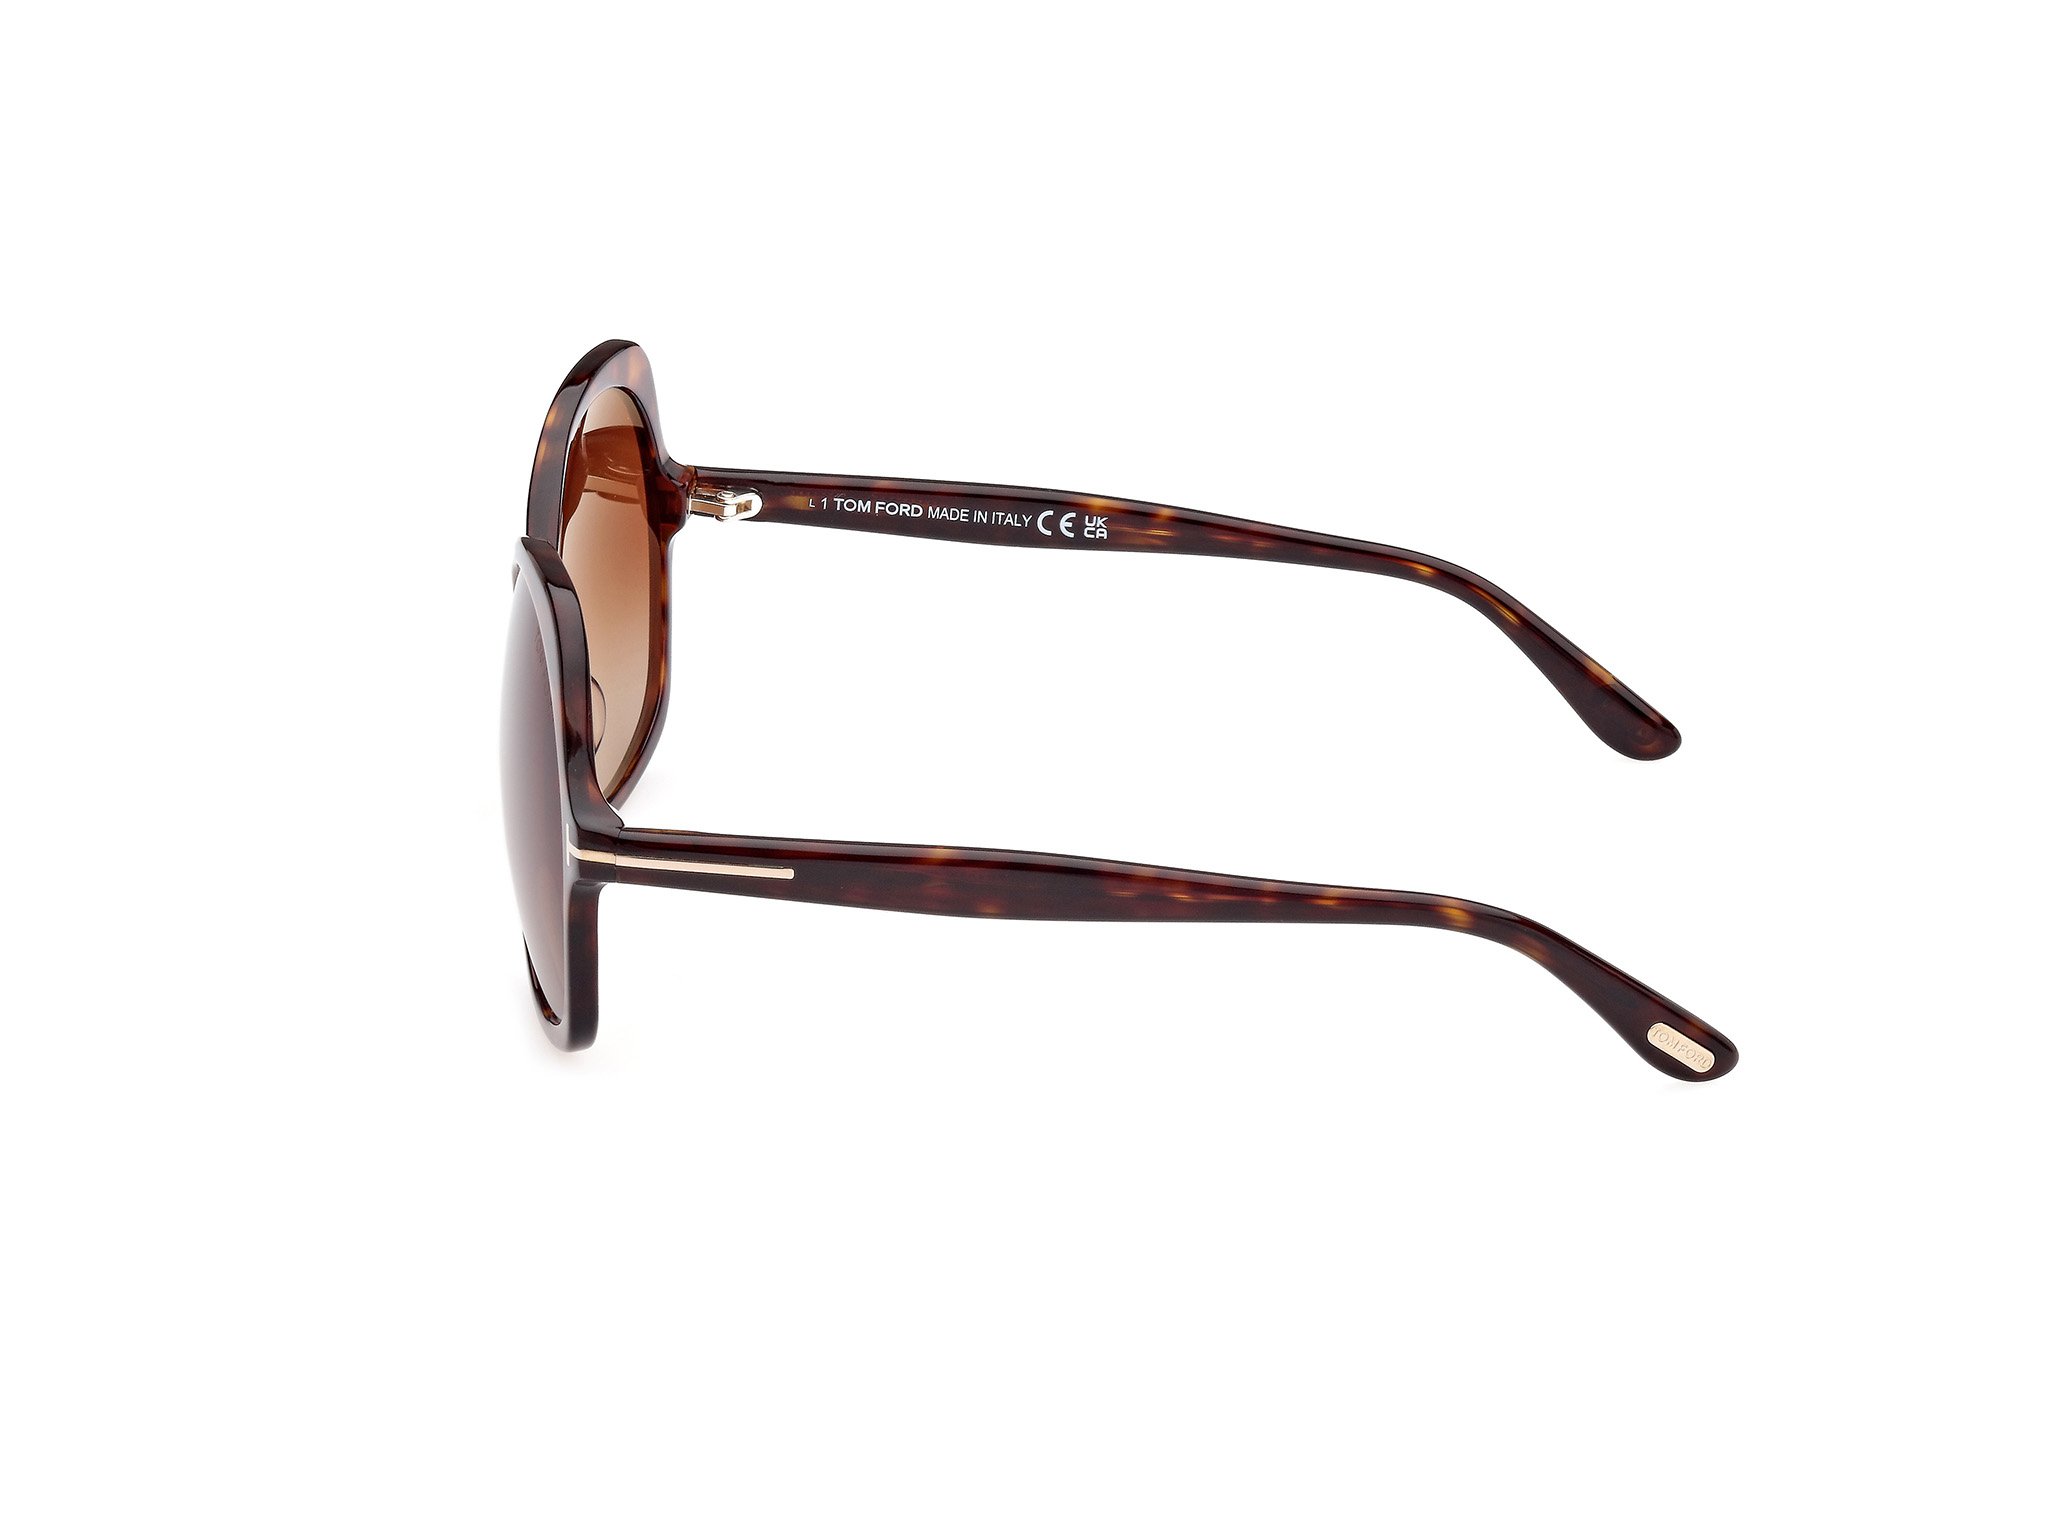 Das Bild zeigt die Sonnenbrille FT1013 52F von der Marke Tom Ford in havanna.